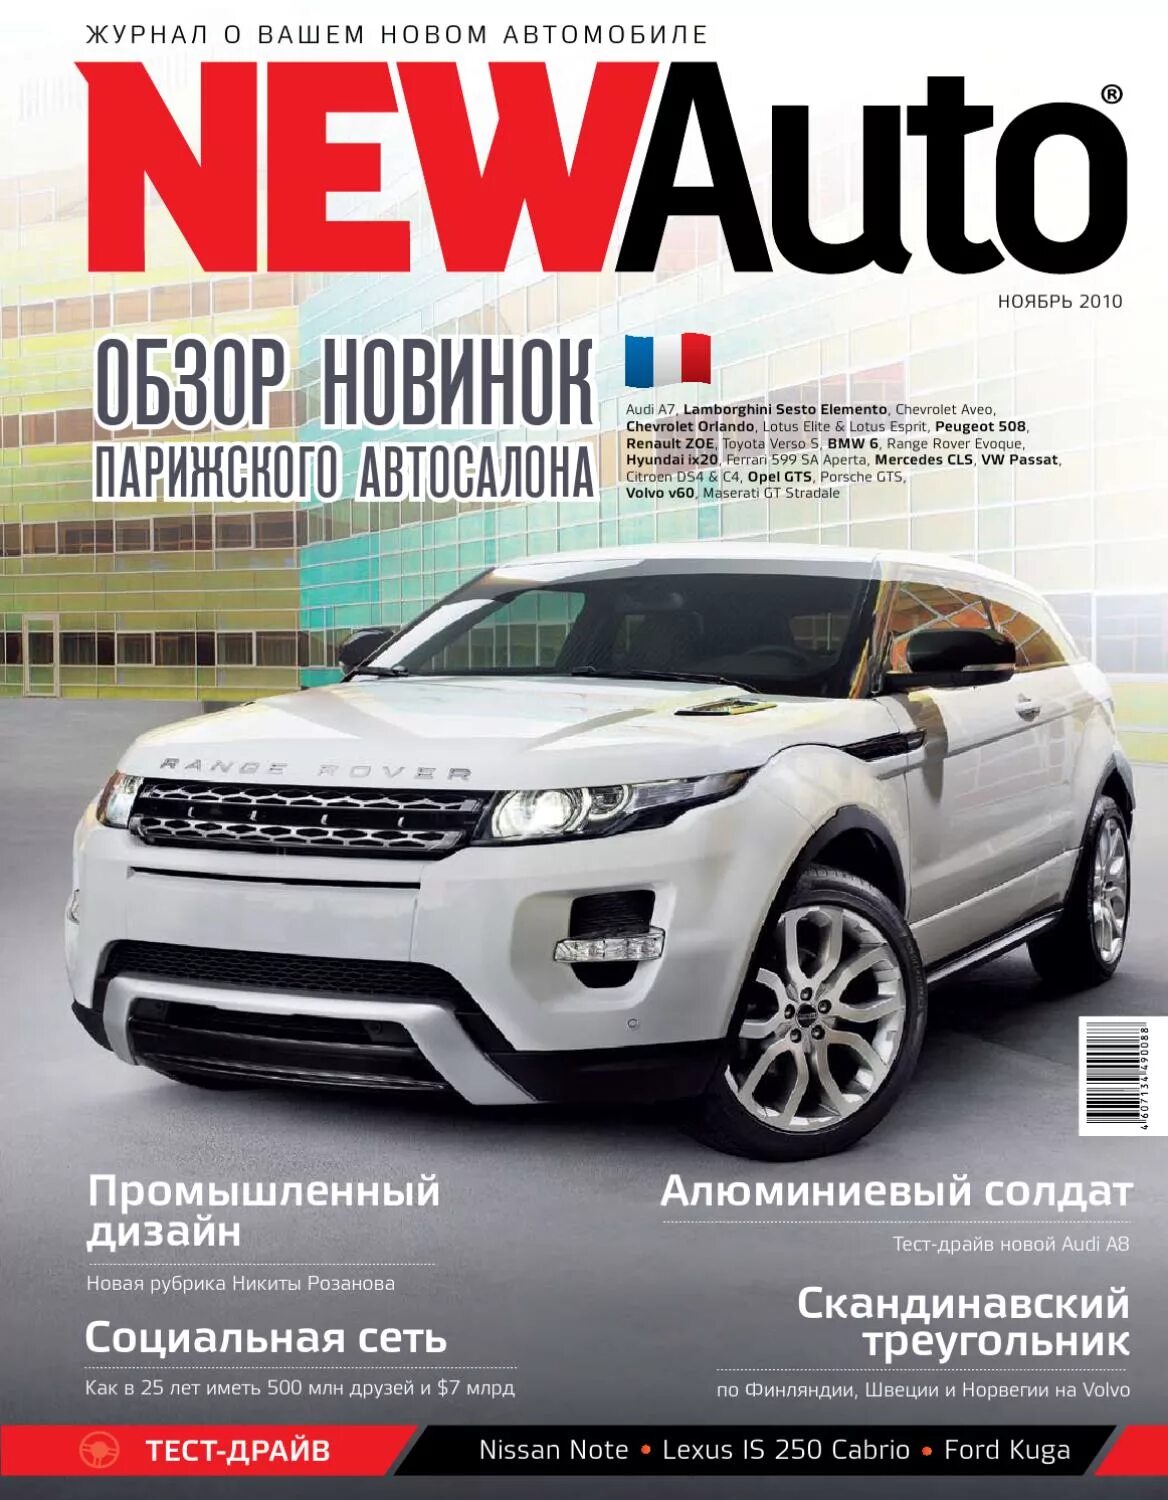 Car magazine. Журнал автомобили. Рекламные журналы авто. Обложка автомобильного журнала. New auto журнал.